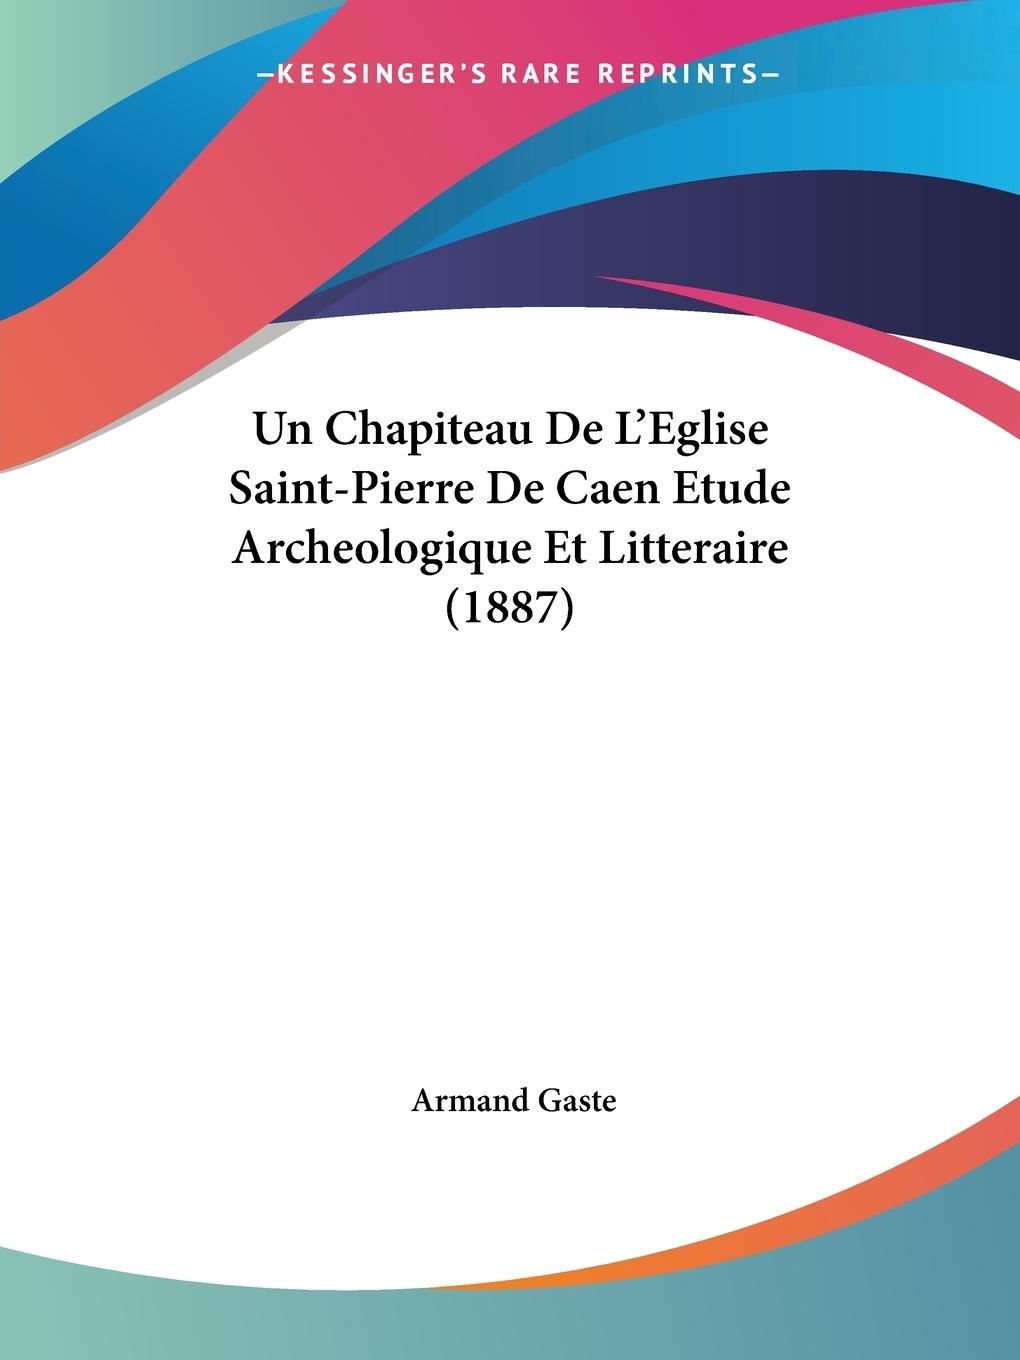 Un Chapiteau De L Eglise Saint-Pierre De Caen Etude Archeologique Et Litteraire (1887) - Gaste, Armand